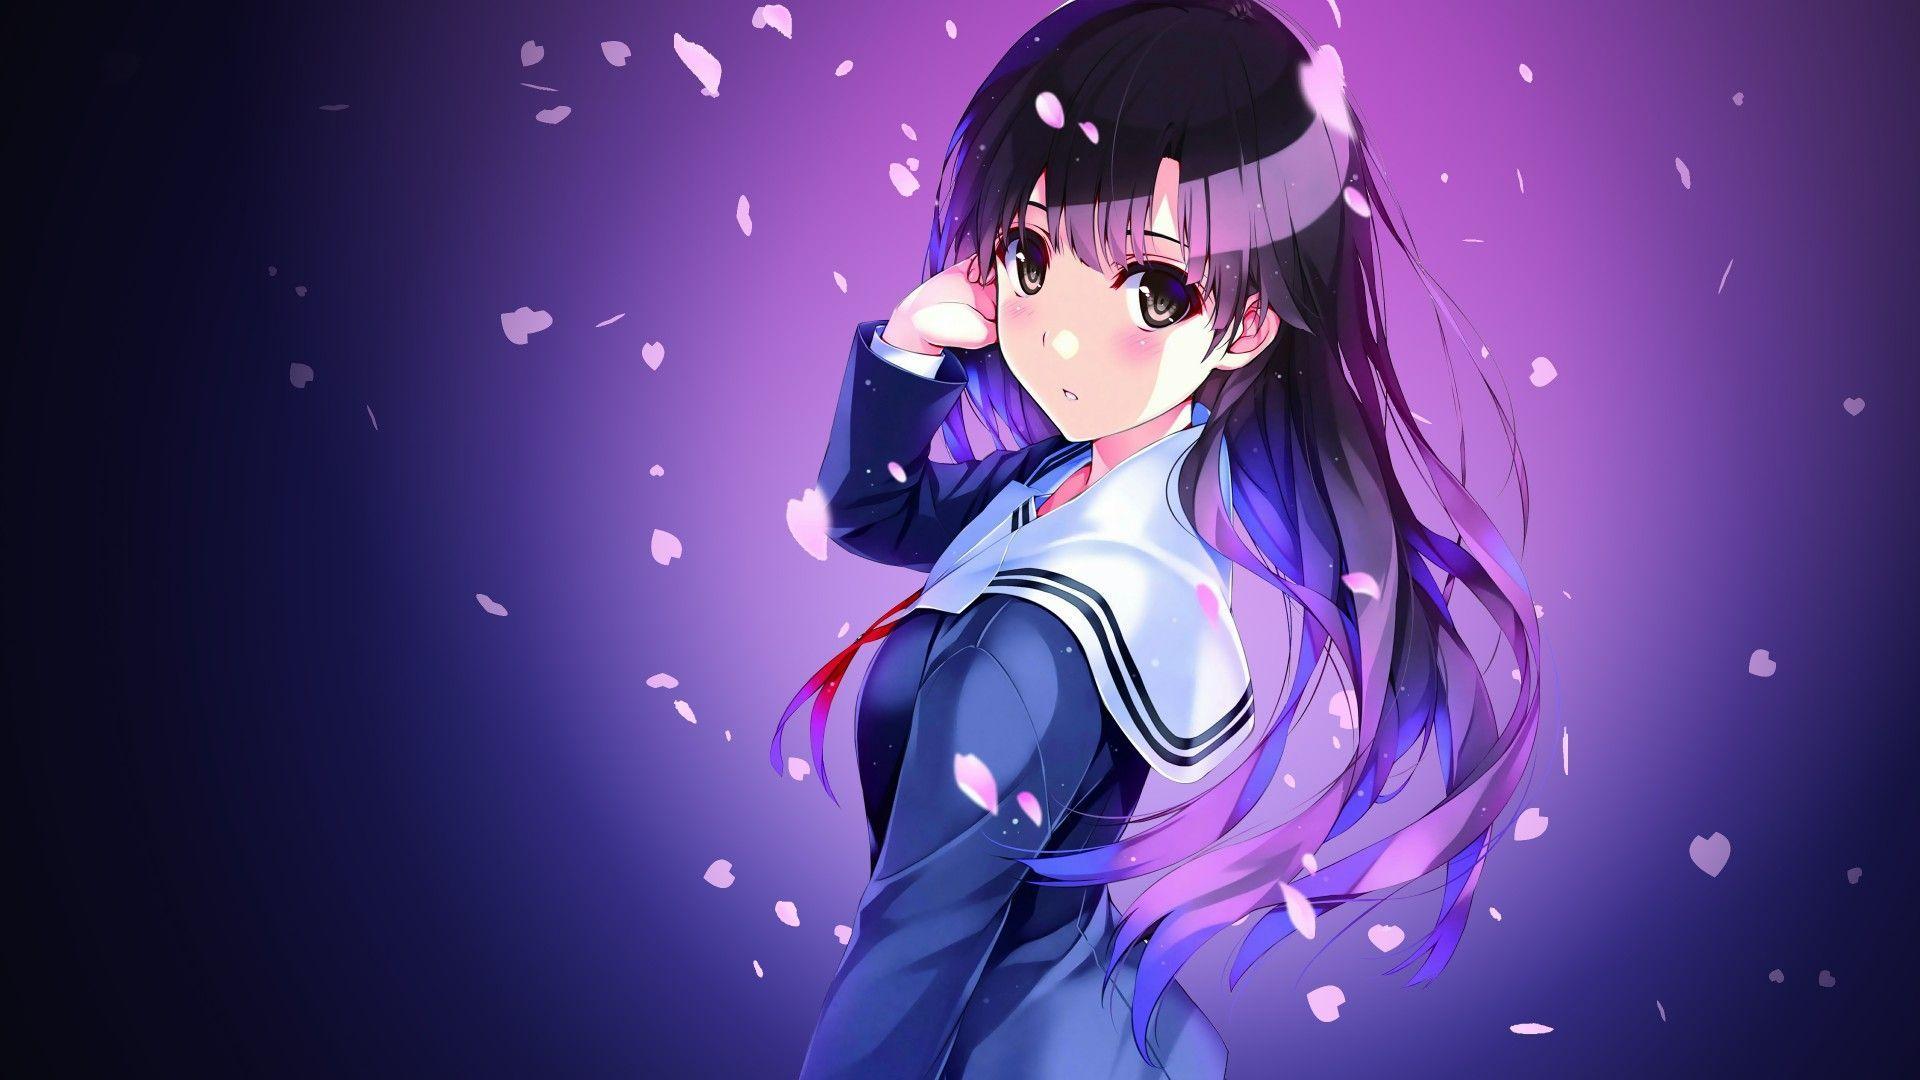 V-tuber background, Anime themed, dark purple theme,...